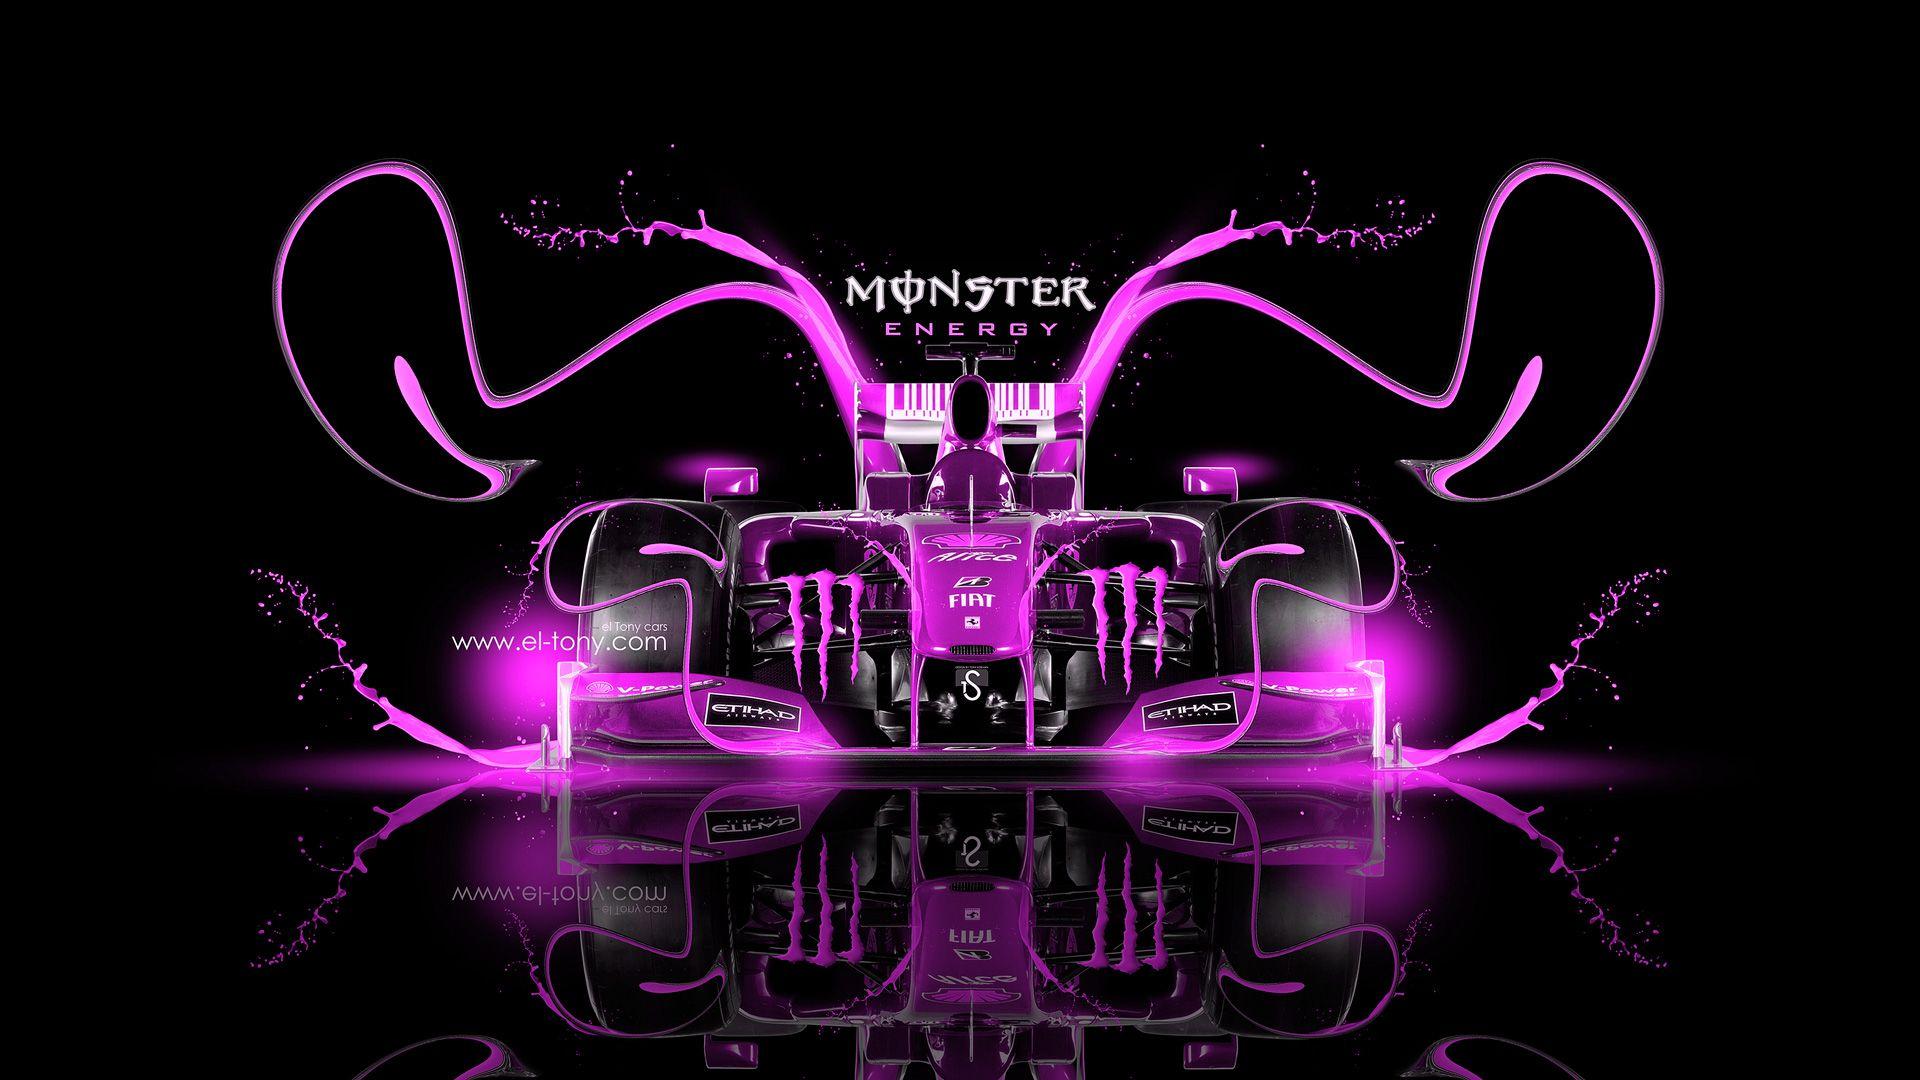 Pink Monster Energy Logo - Monster Energy Wallpaper, Picture, Image